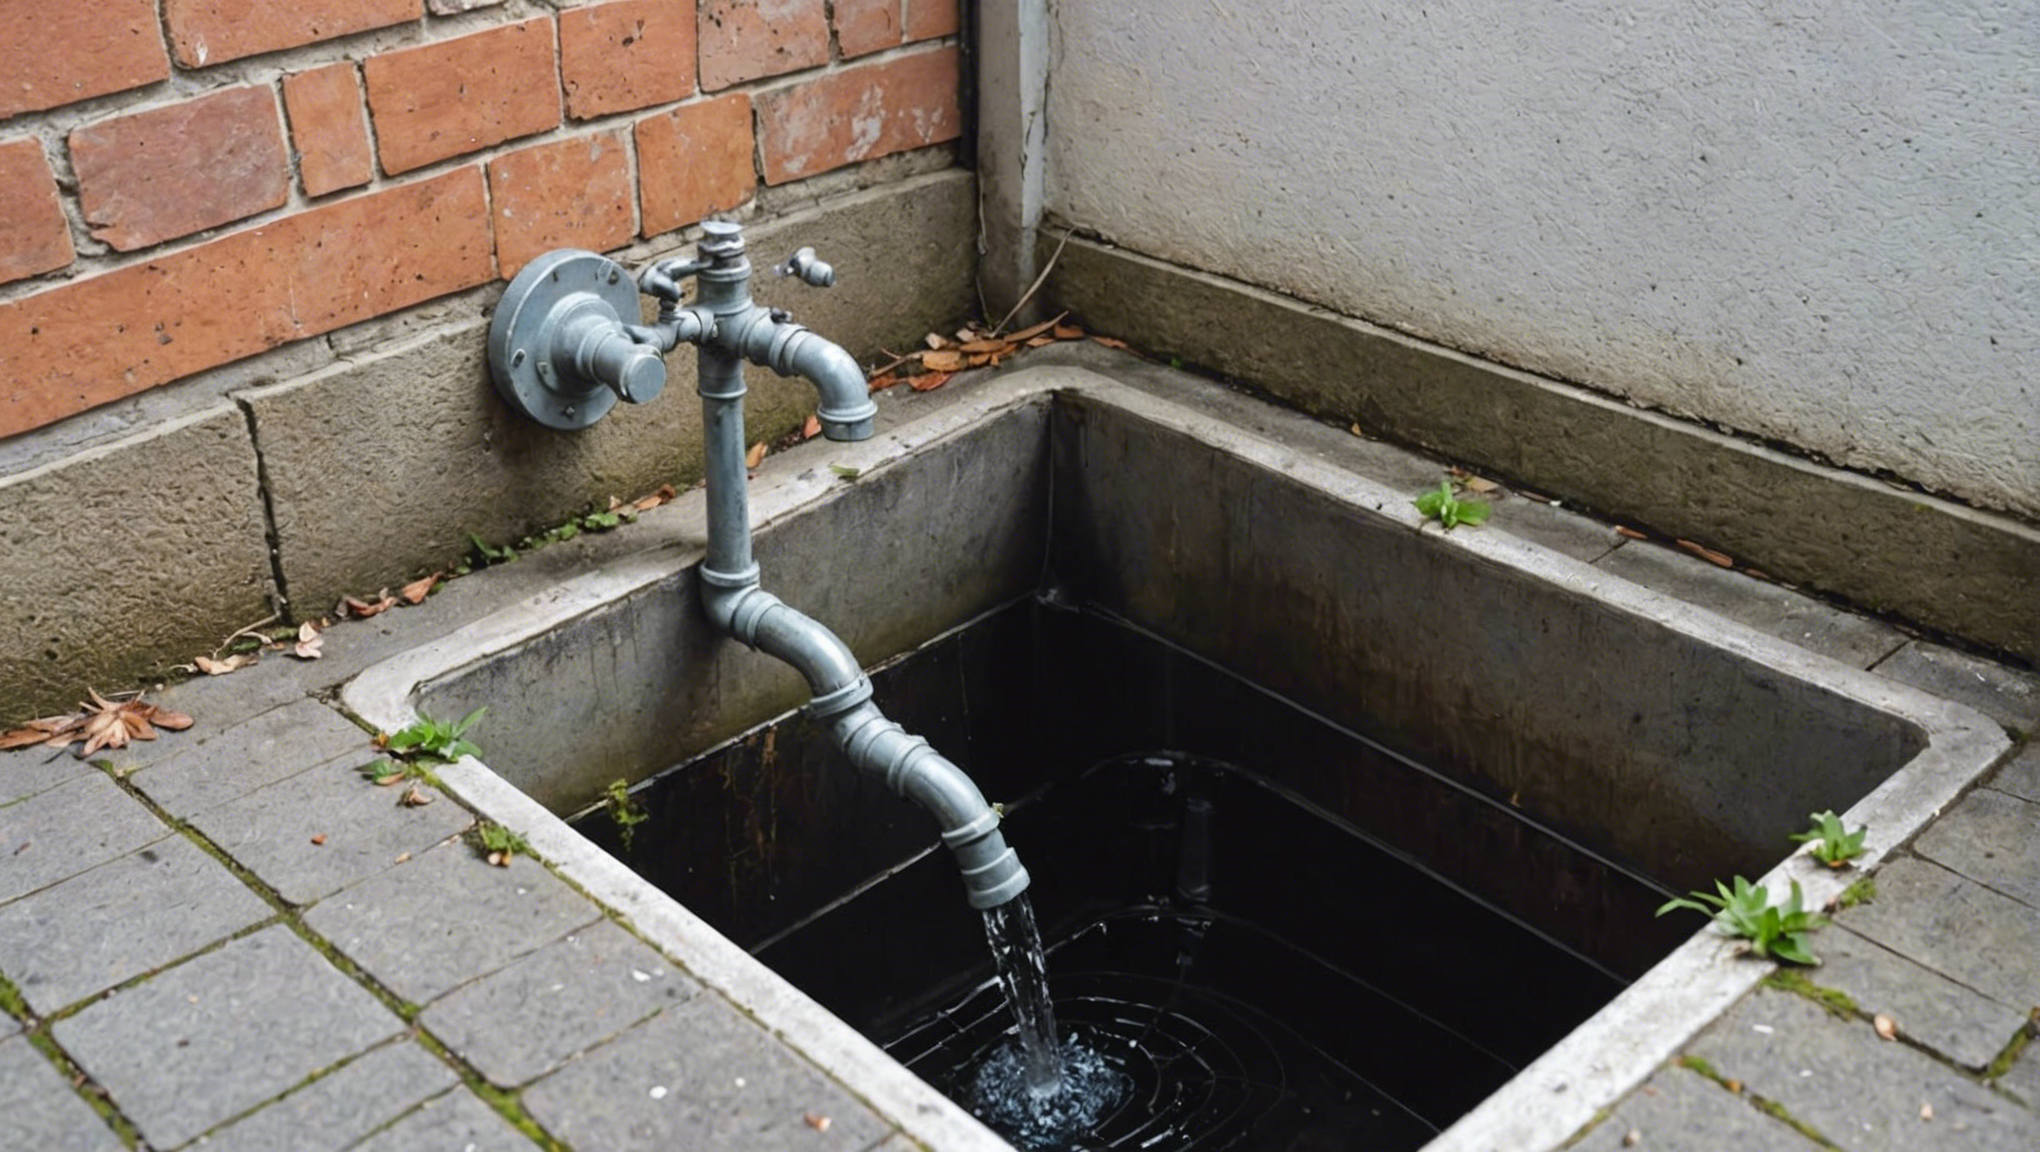 optimisez l'écoulement de l'eau avec nos services de nettoyage des gouttières et des drains. profitez d'un système impeccable grâce à notre expertise professionnelle.